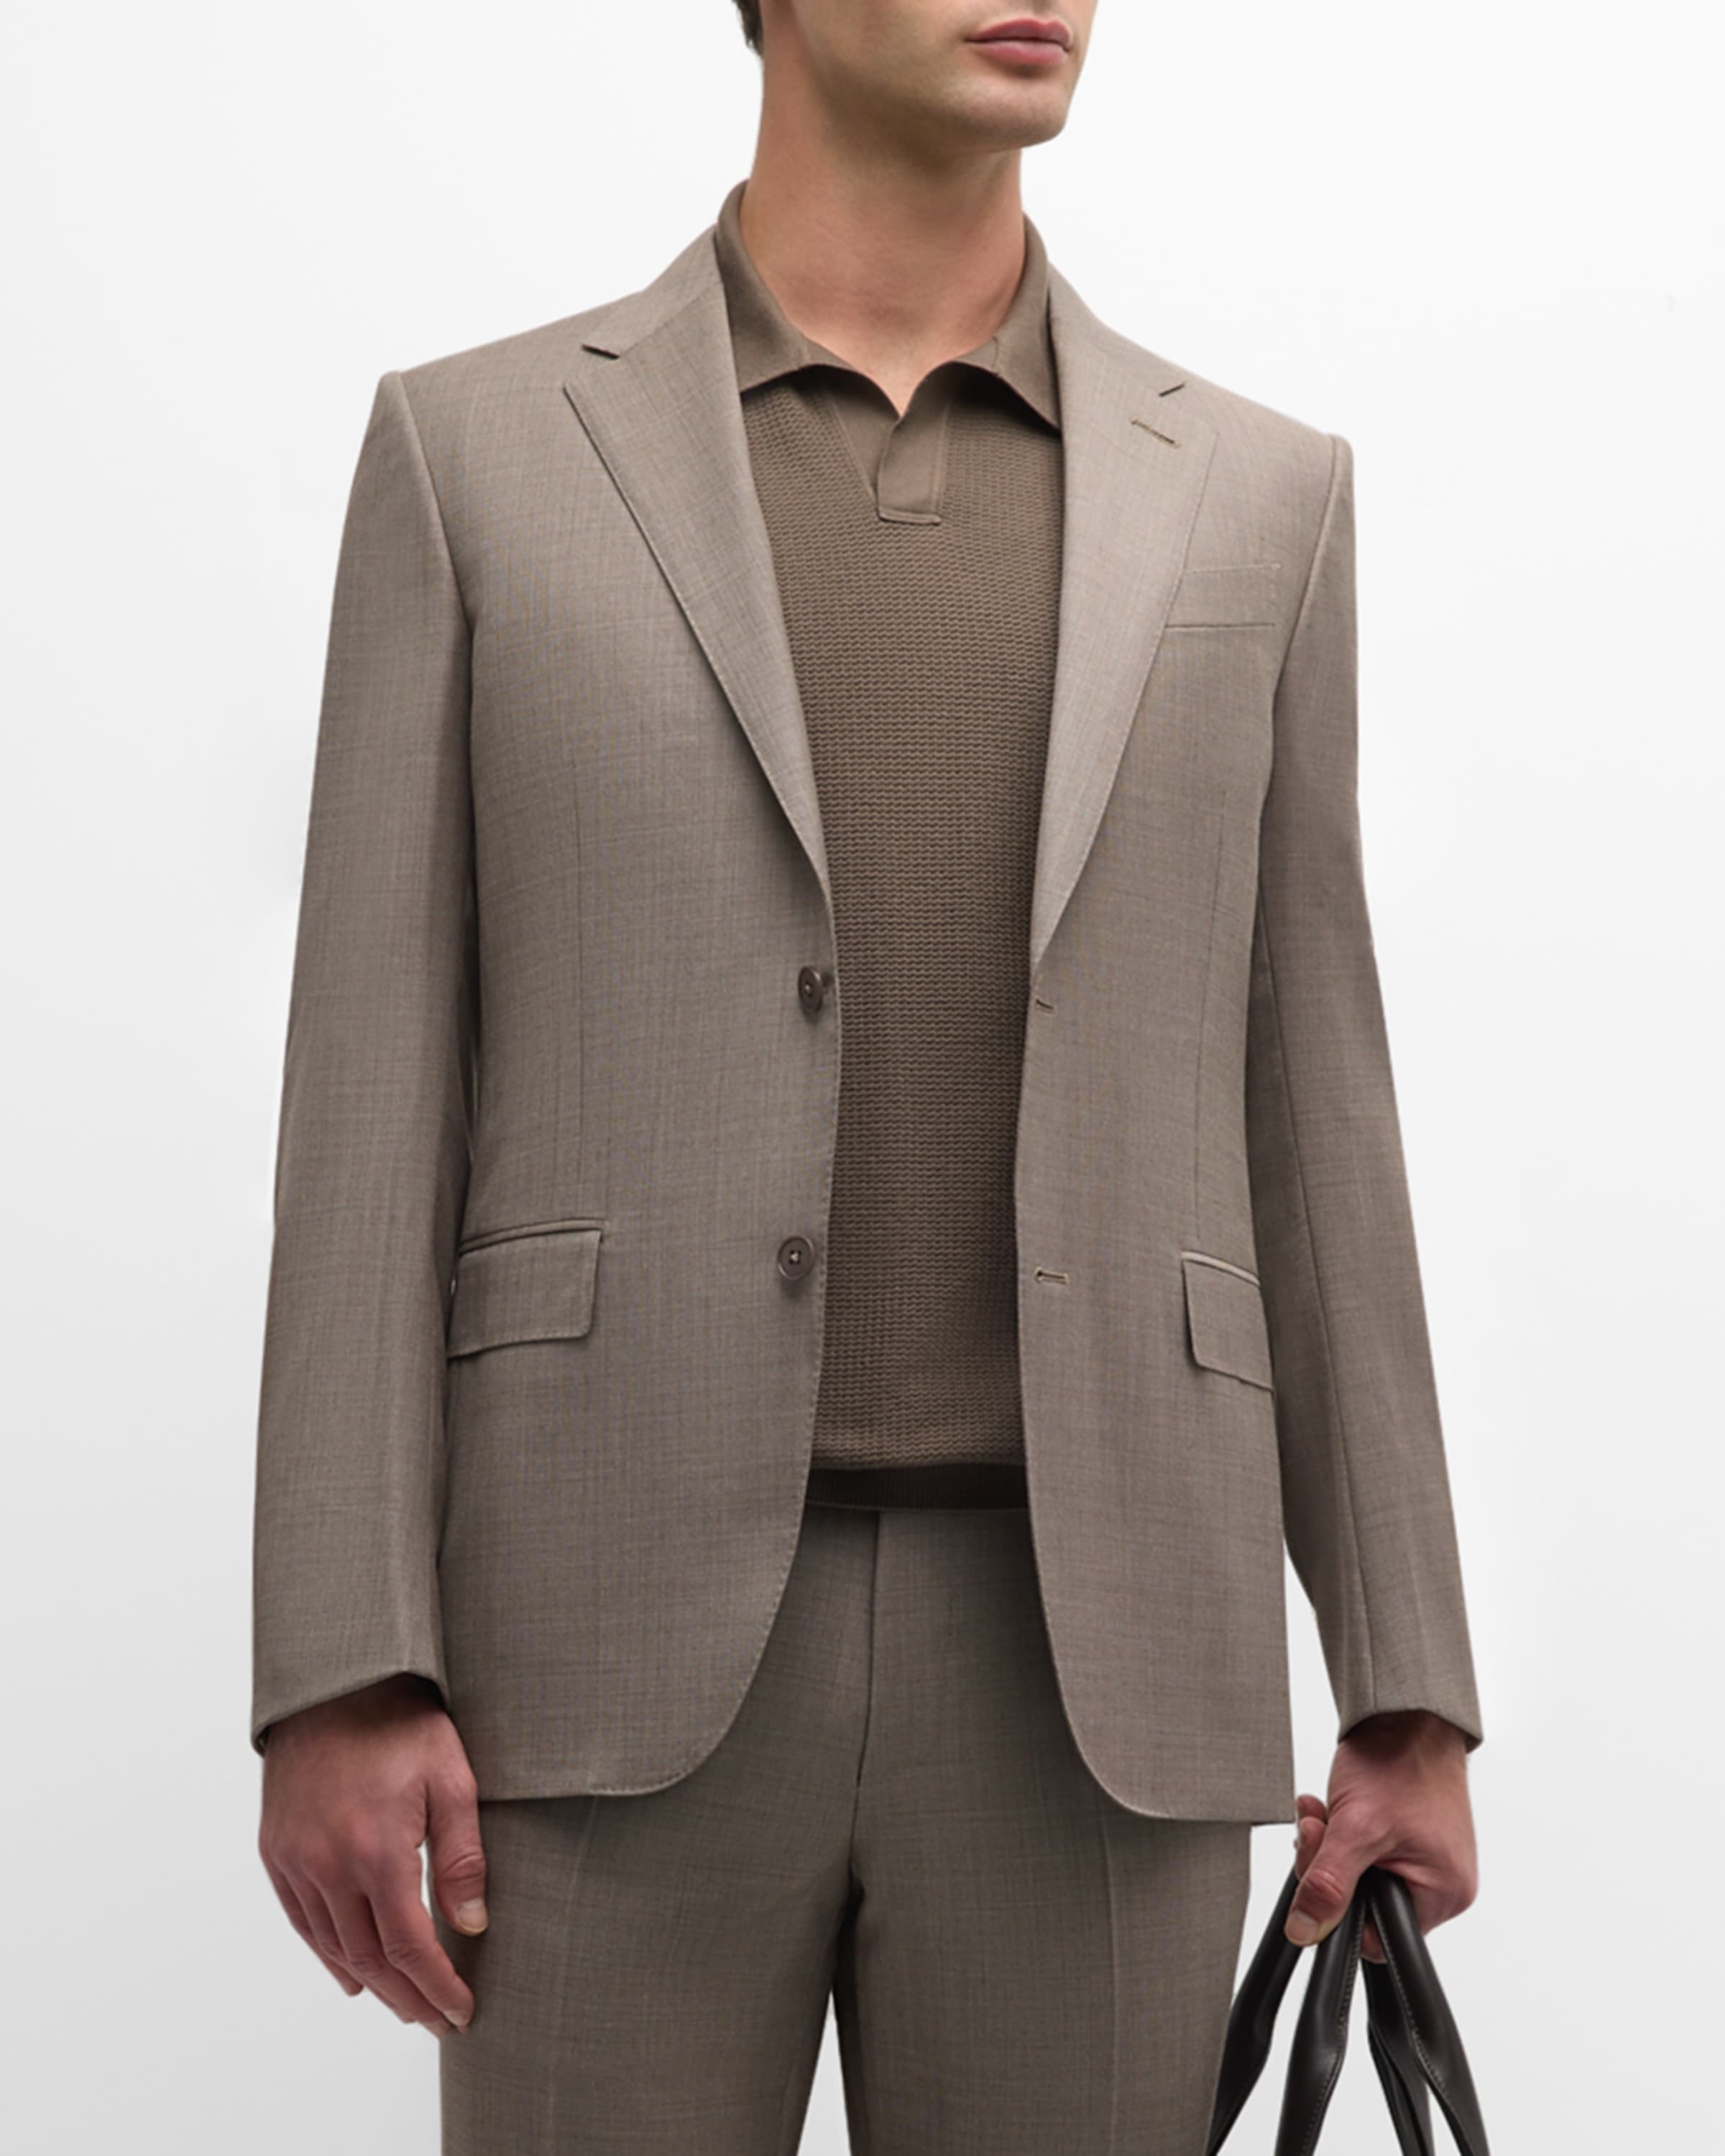 Men's Wool Sharkskin Suit - 5